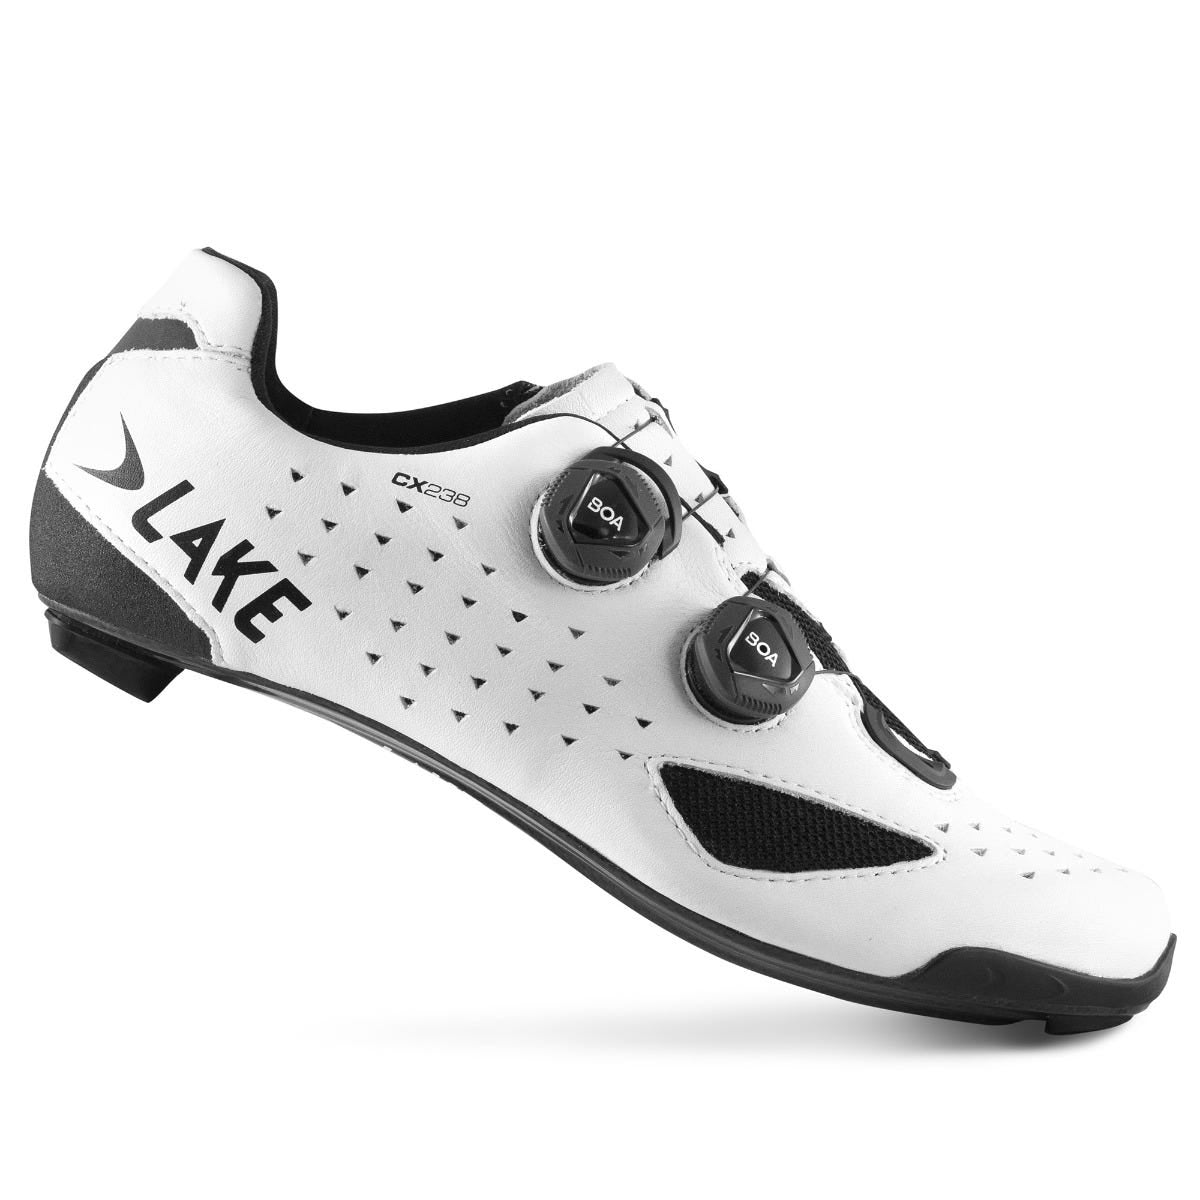 Lake CX238 Carbon Men's SPD Road Cycling Shoes White - EU 41